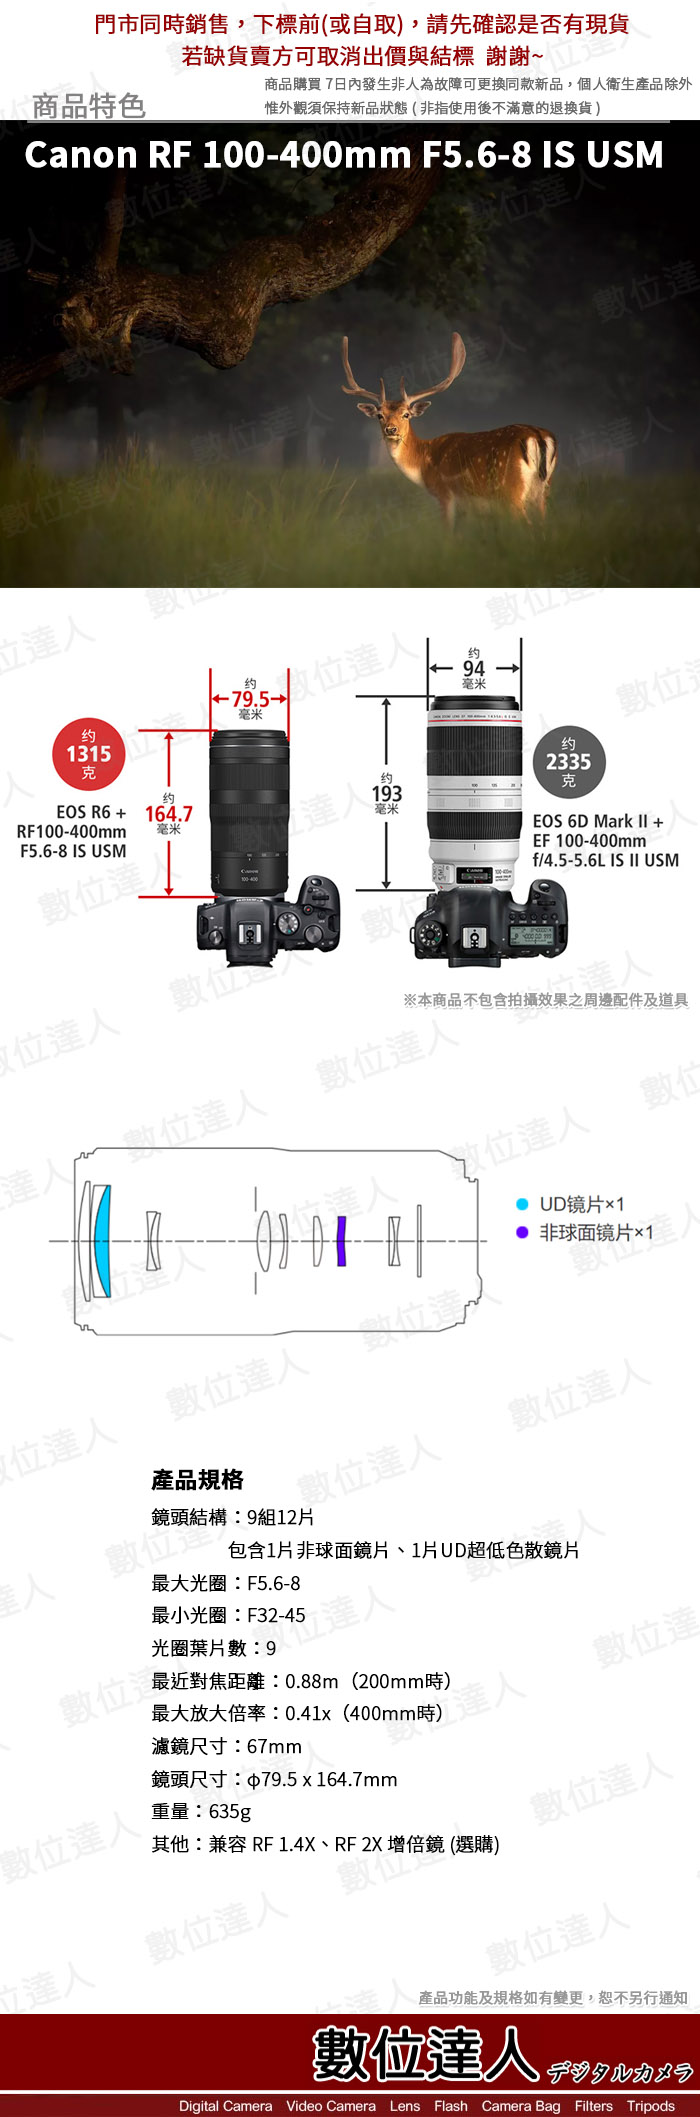 【數位達人】平輸 Canon RF 100-400mm F5.6-8 IS USM 輕巧 超望遠 變焦鏡